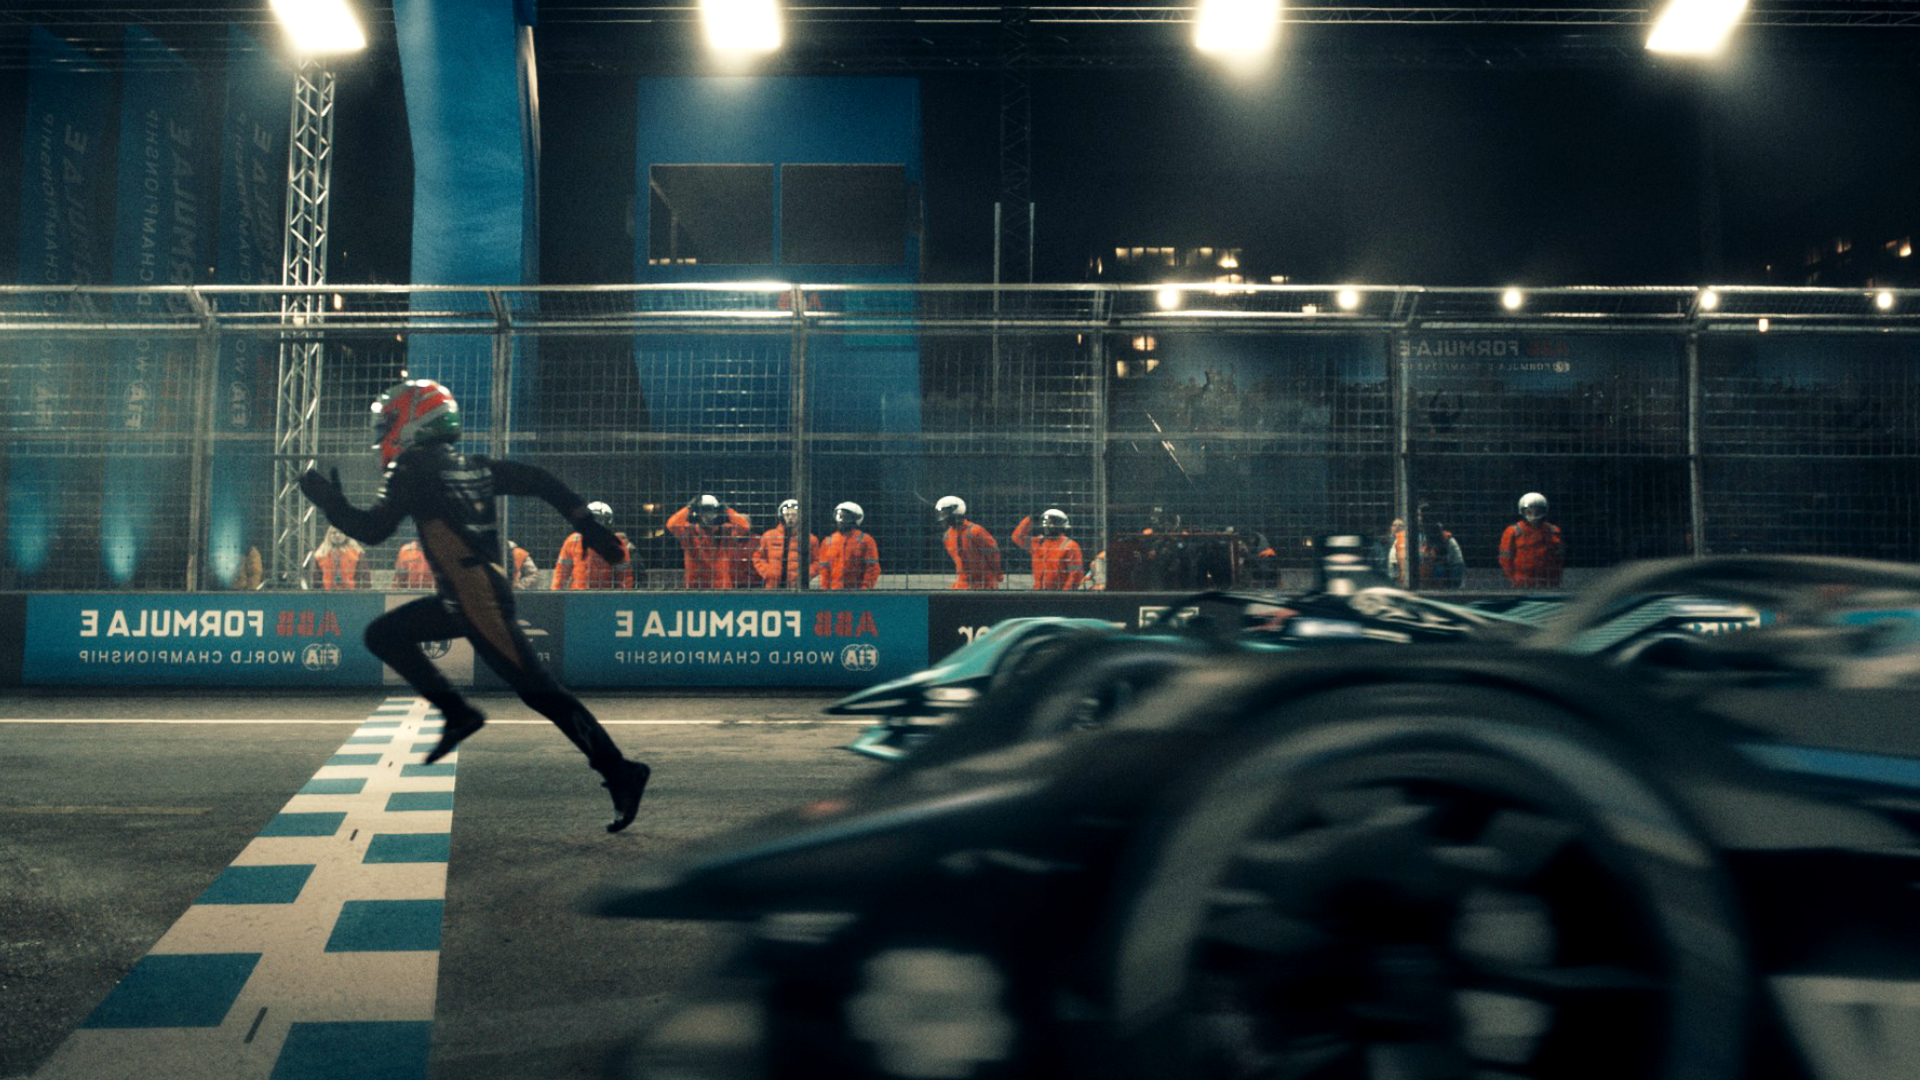 La Formule E débute sa saison 2022 avec le spot publicitaire "No Turning Back".